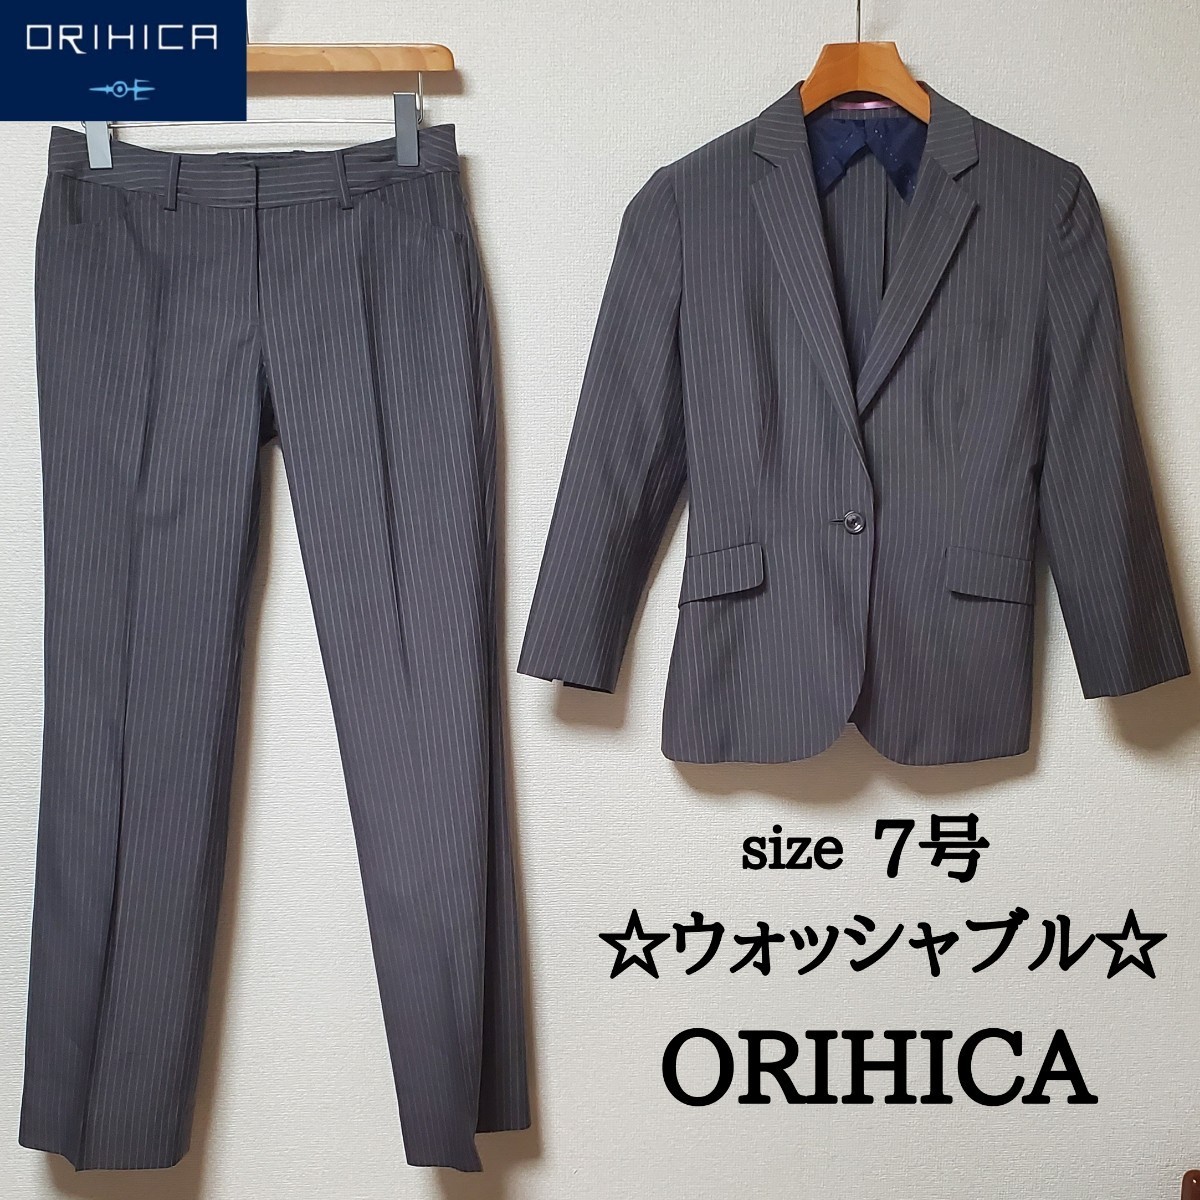 でおすすめアイテム。 ORIHICA スーツ セットアップ チャコールグレー 